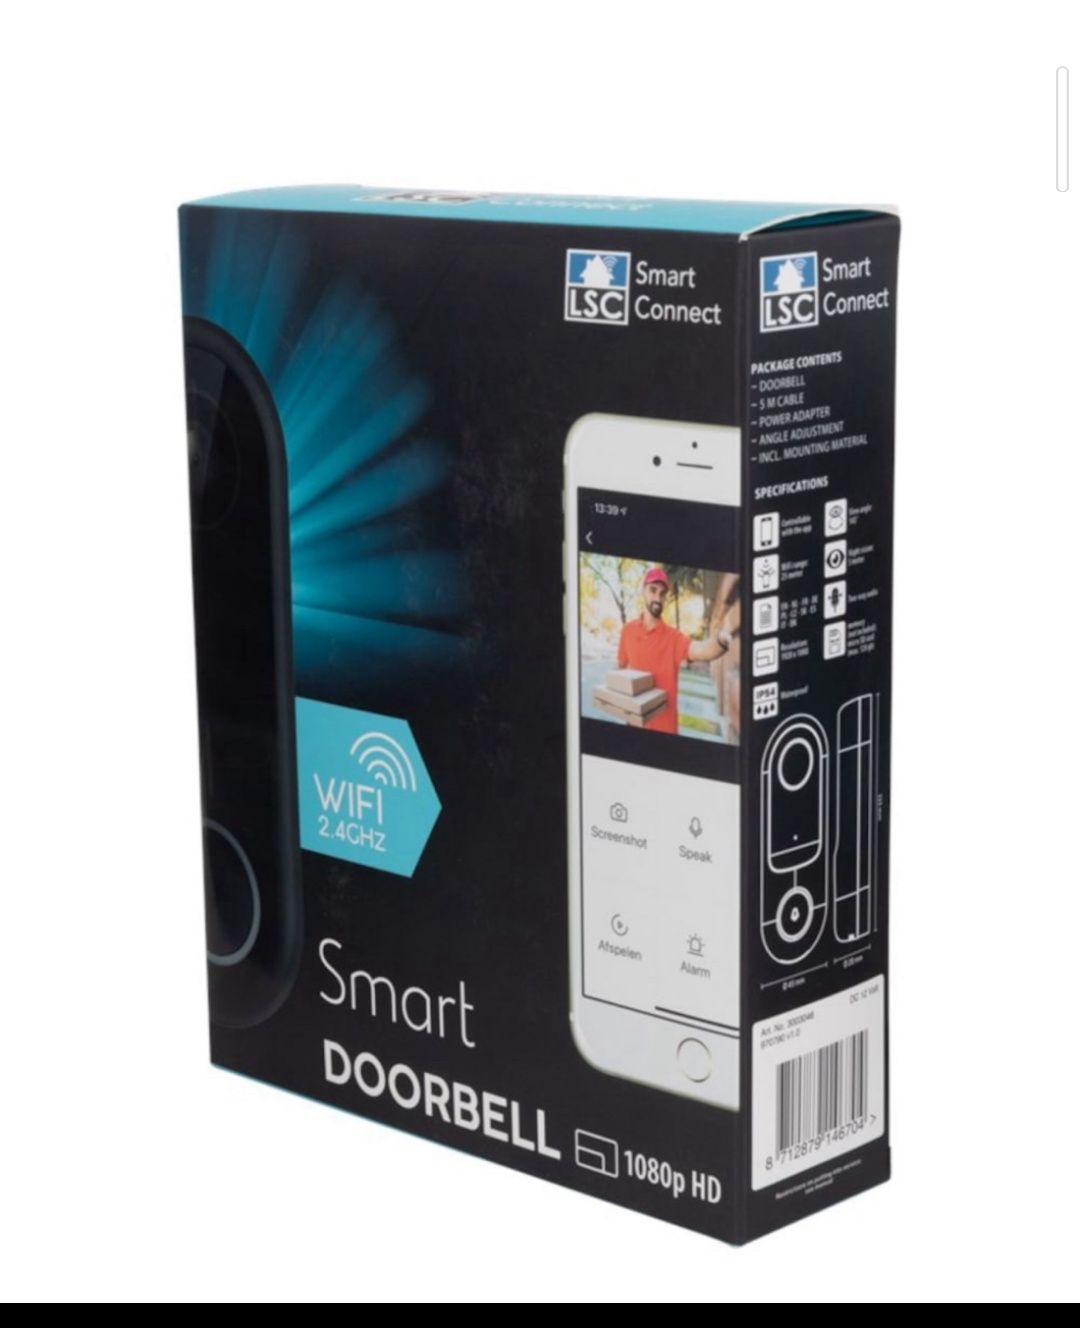 Sonerie video doorbell Smart WIFI 2,4Ghz